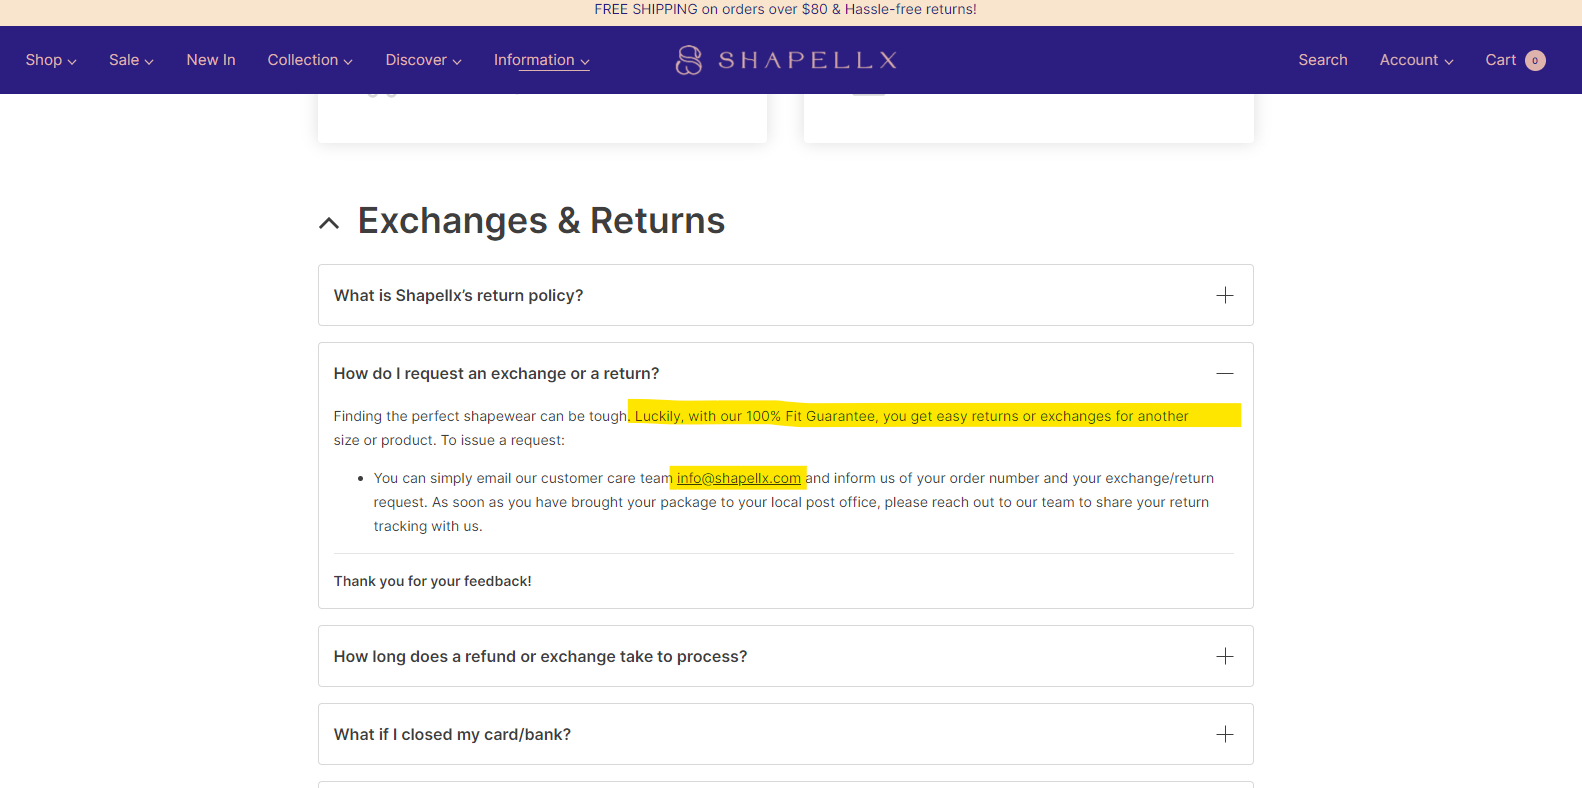 Shapellx Reviews  Read Customer Service Reviews of shapellx.com